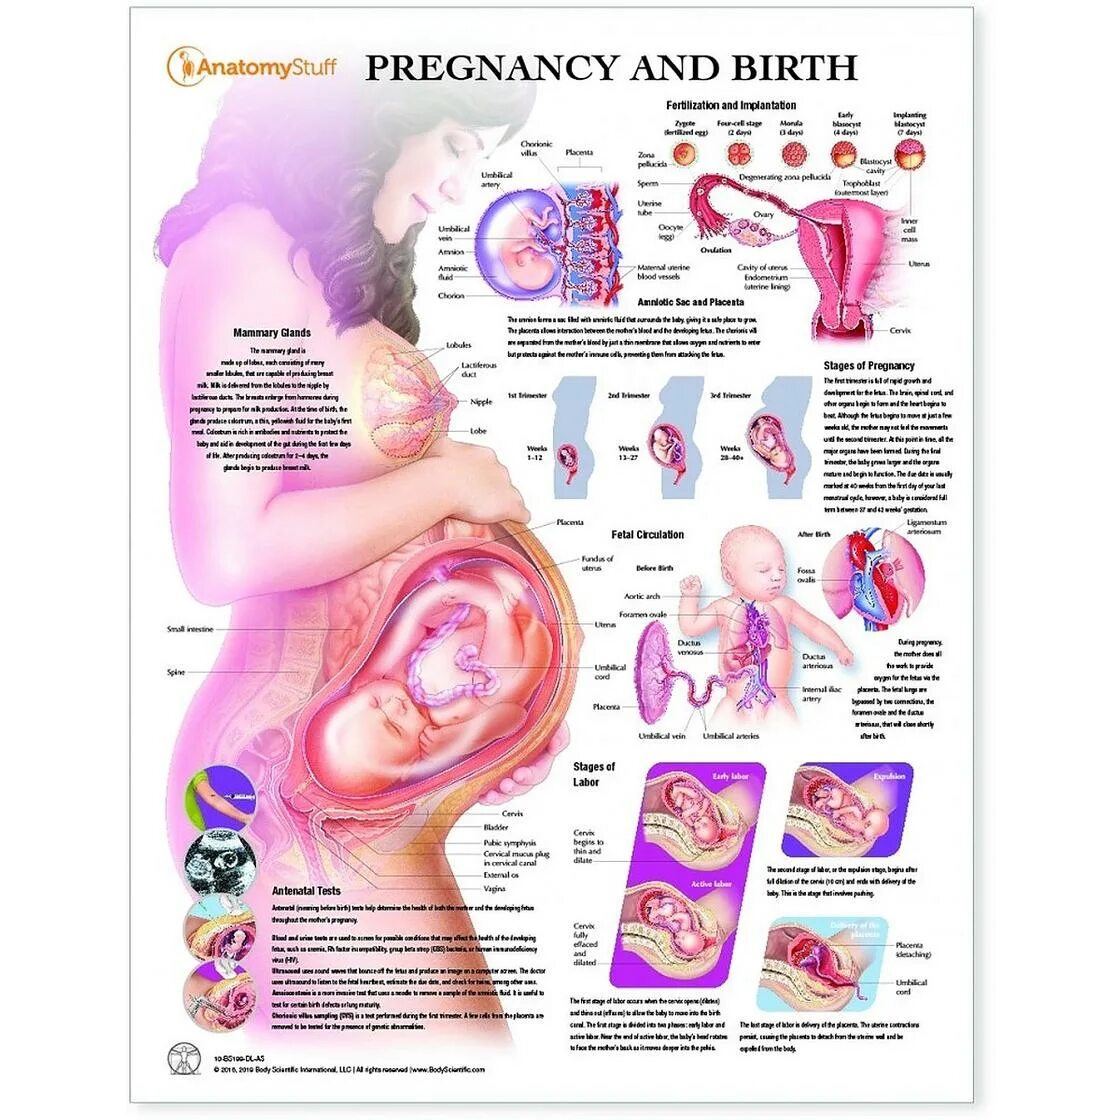 32 недели беременности что происходит с мамой. Положение ребенка в животе на 33 неделе беременности. Плод в животе матери схема. Положение органов на 32 неделе беременности. Эмбрион 34 недели беременности вес плода.